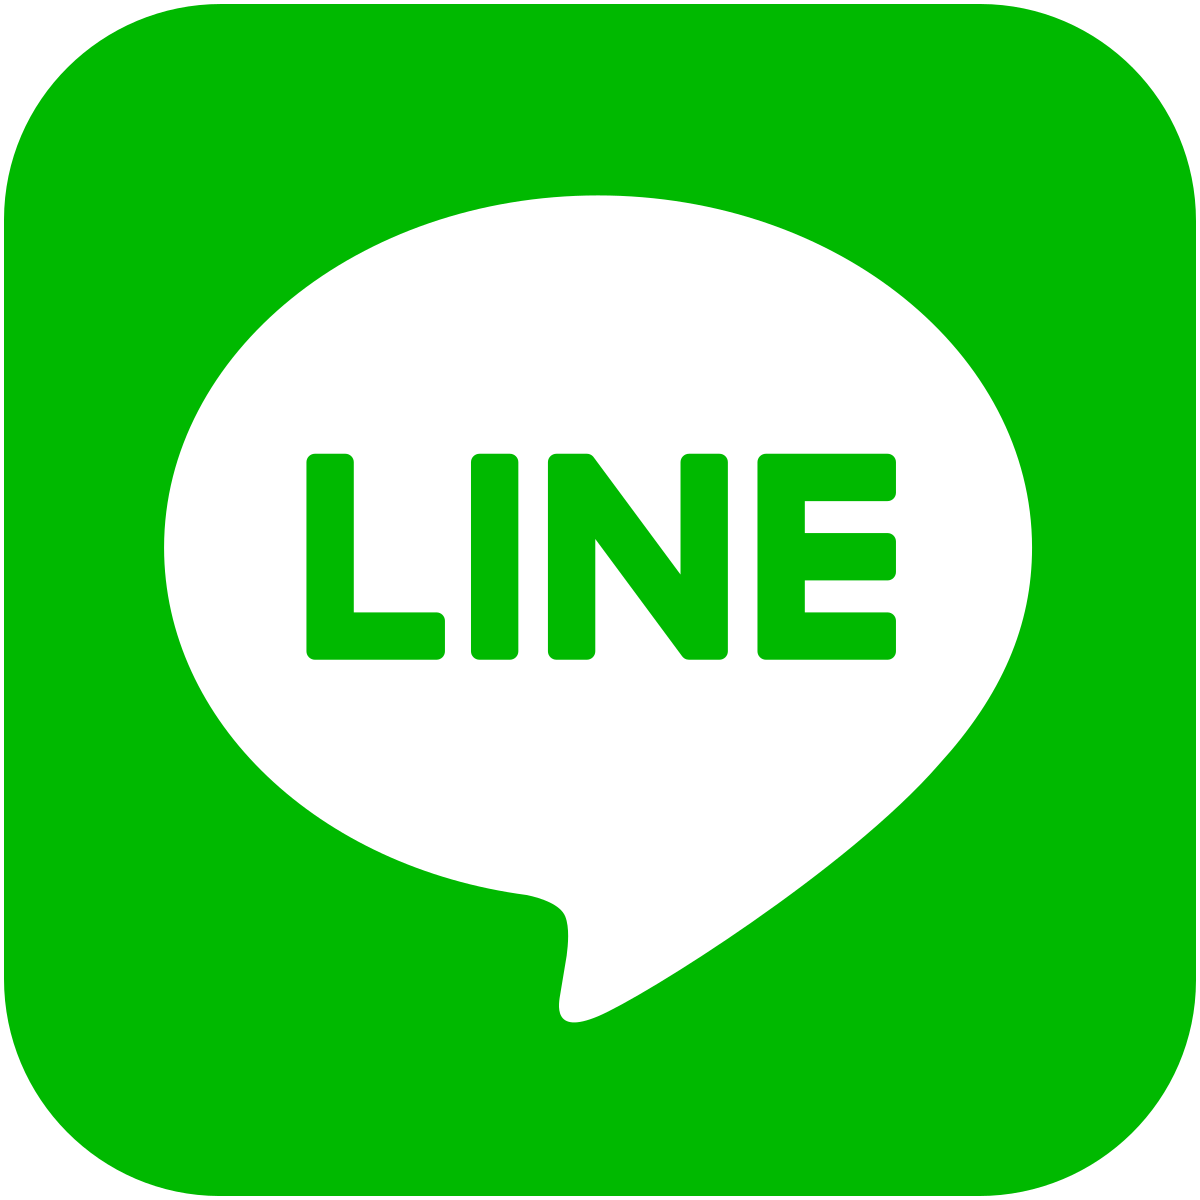 Messaging API  LINE Developers